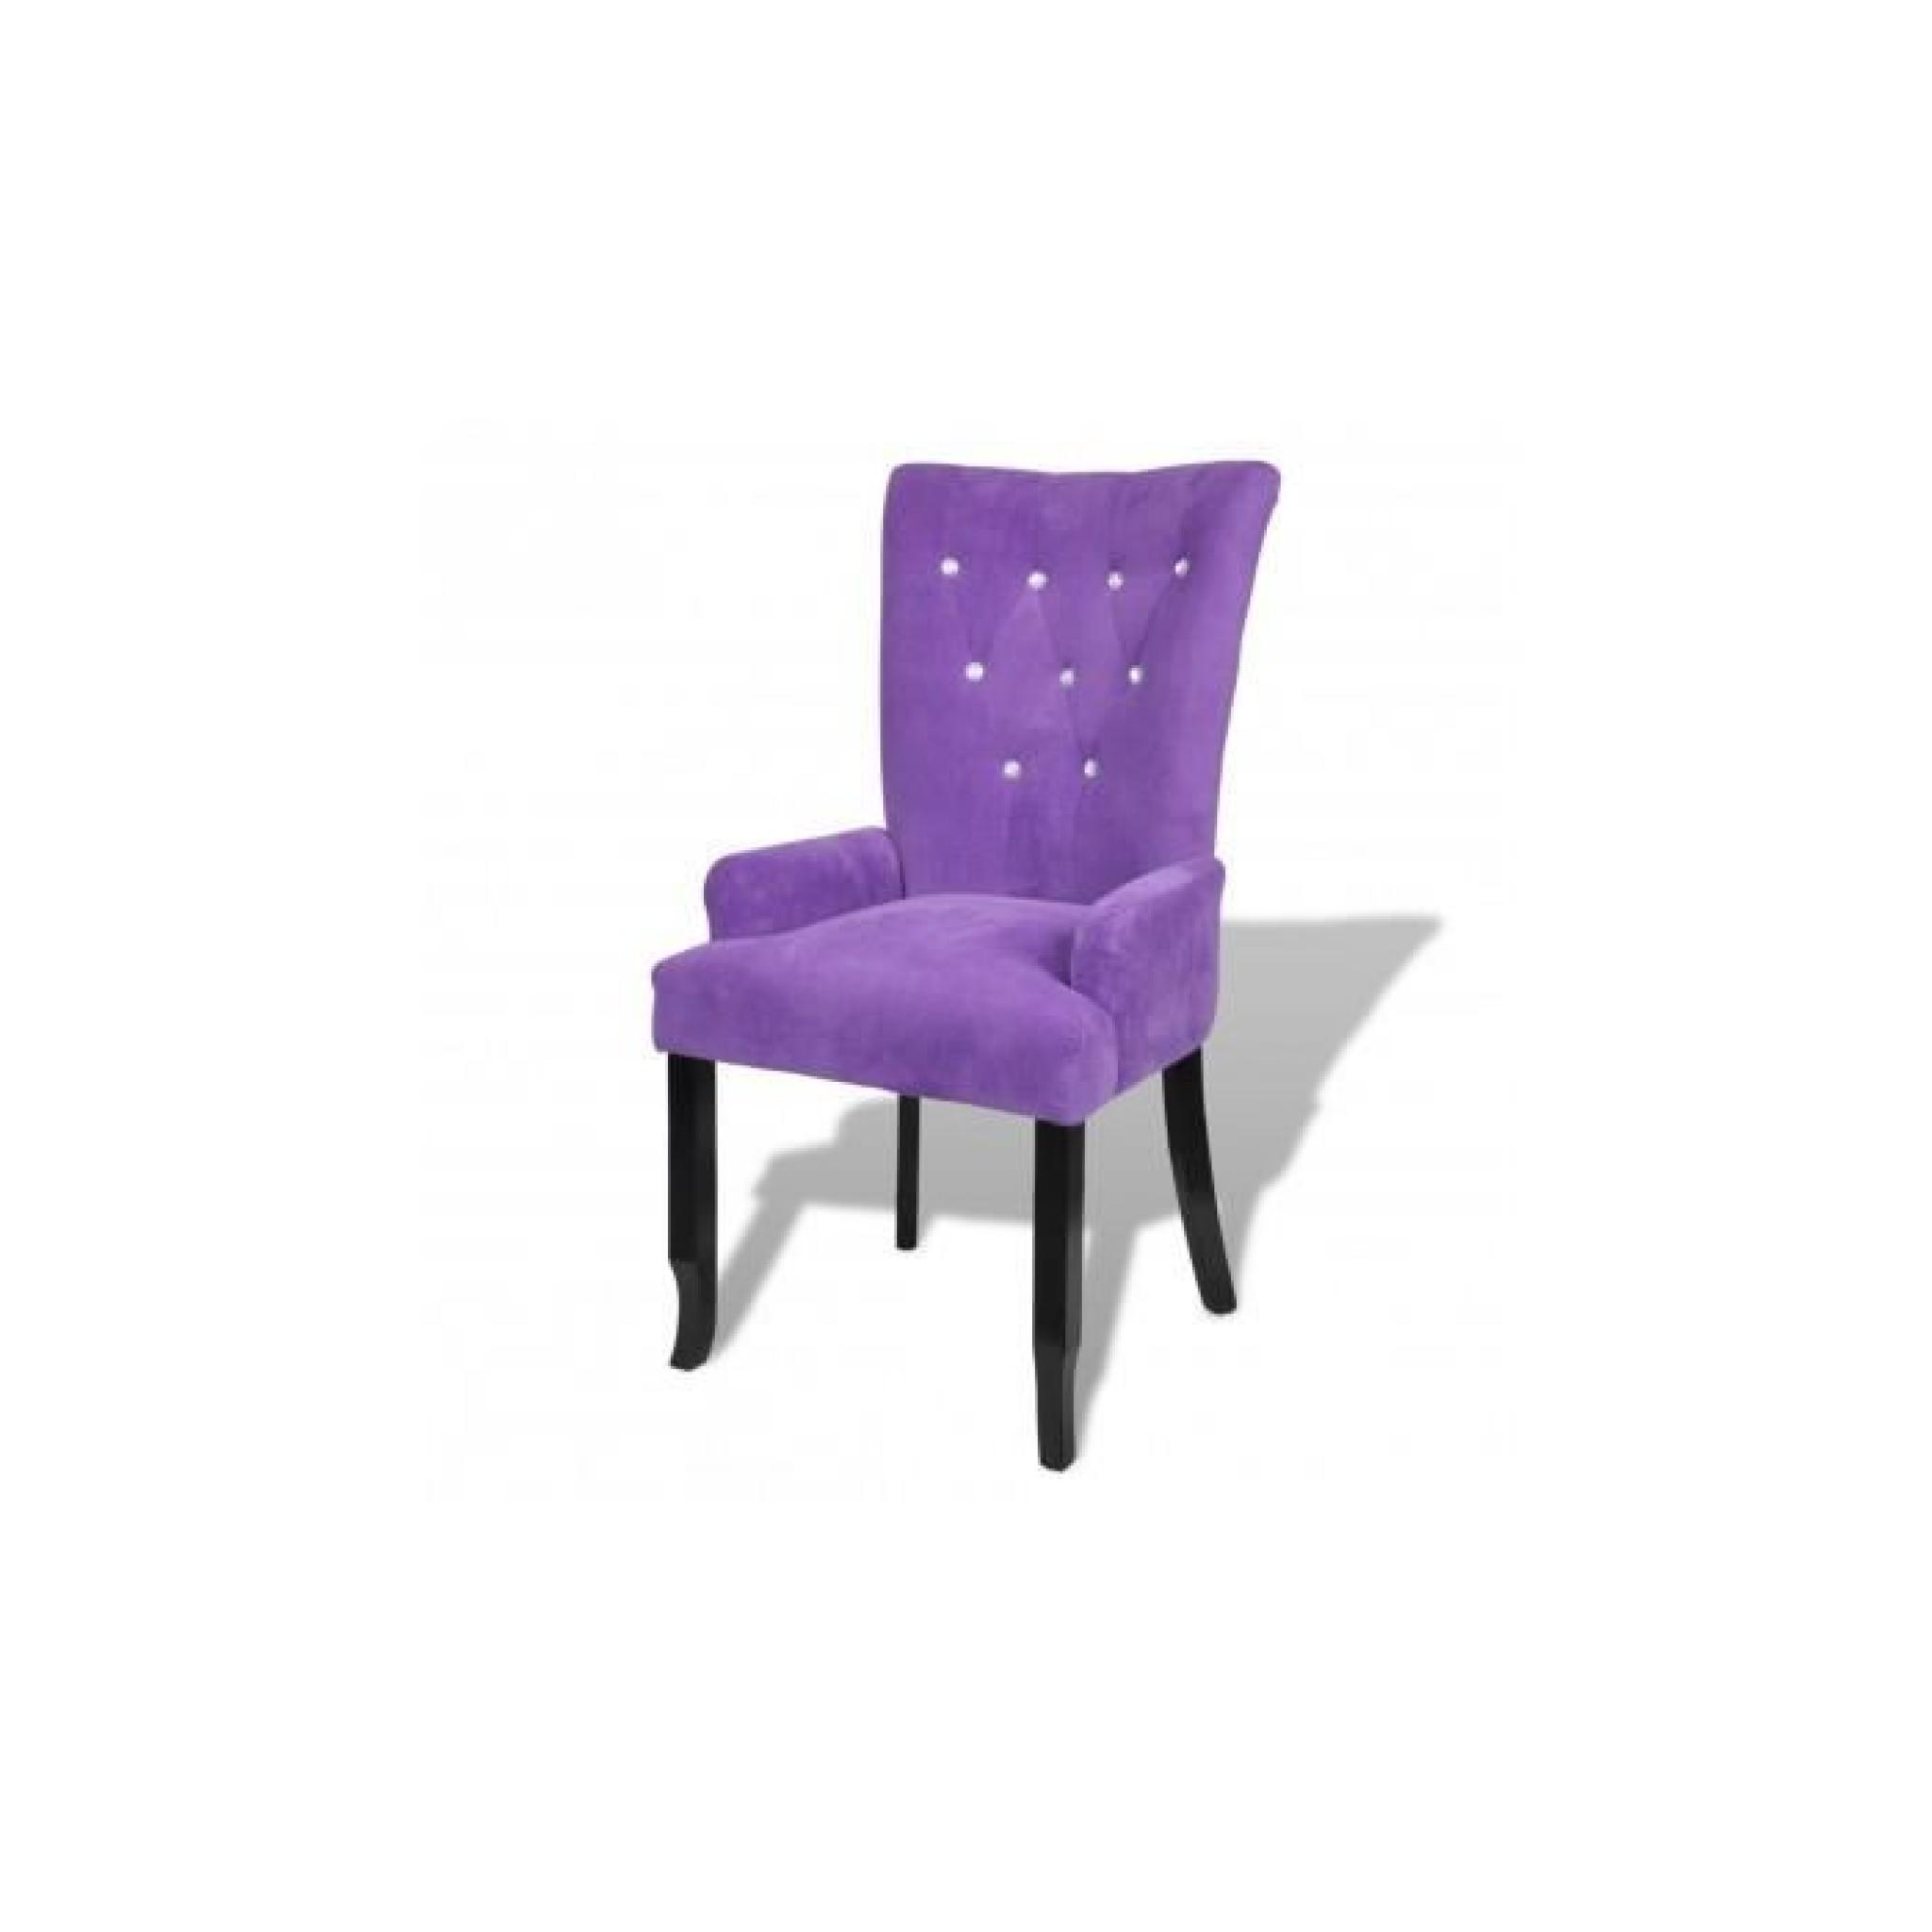 Chaise capitonnée velours violet 54 x 56 x 106 cm Stylashop pas cher